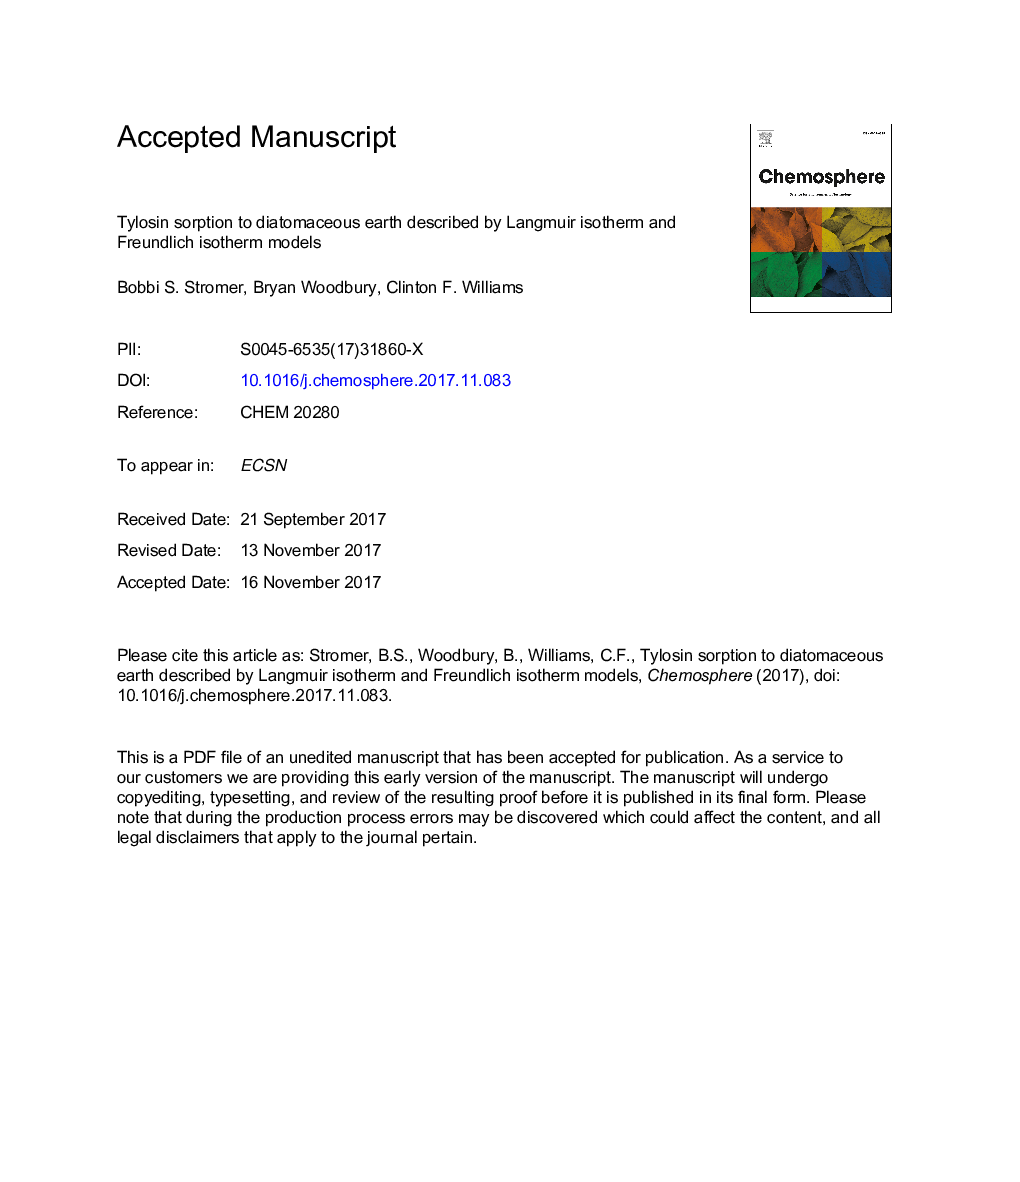 جذب تیلوسین به زمین دیابتی که توسط مدل ایزوترم لانگموییر و ایزوترم فروندلیچ توصیف شده است 